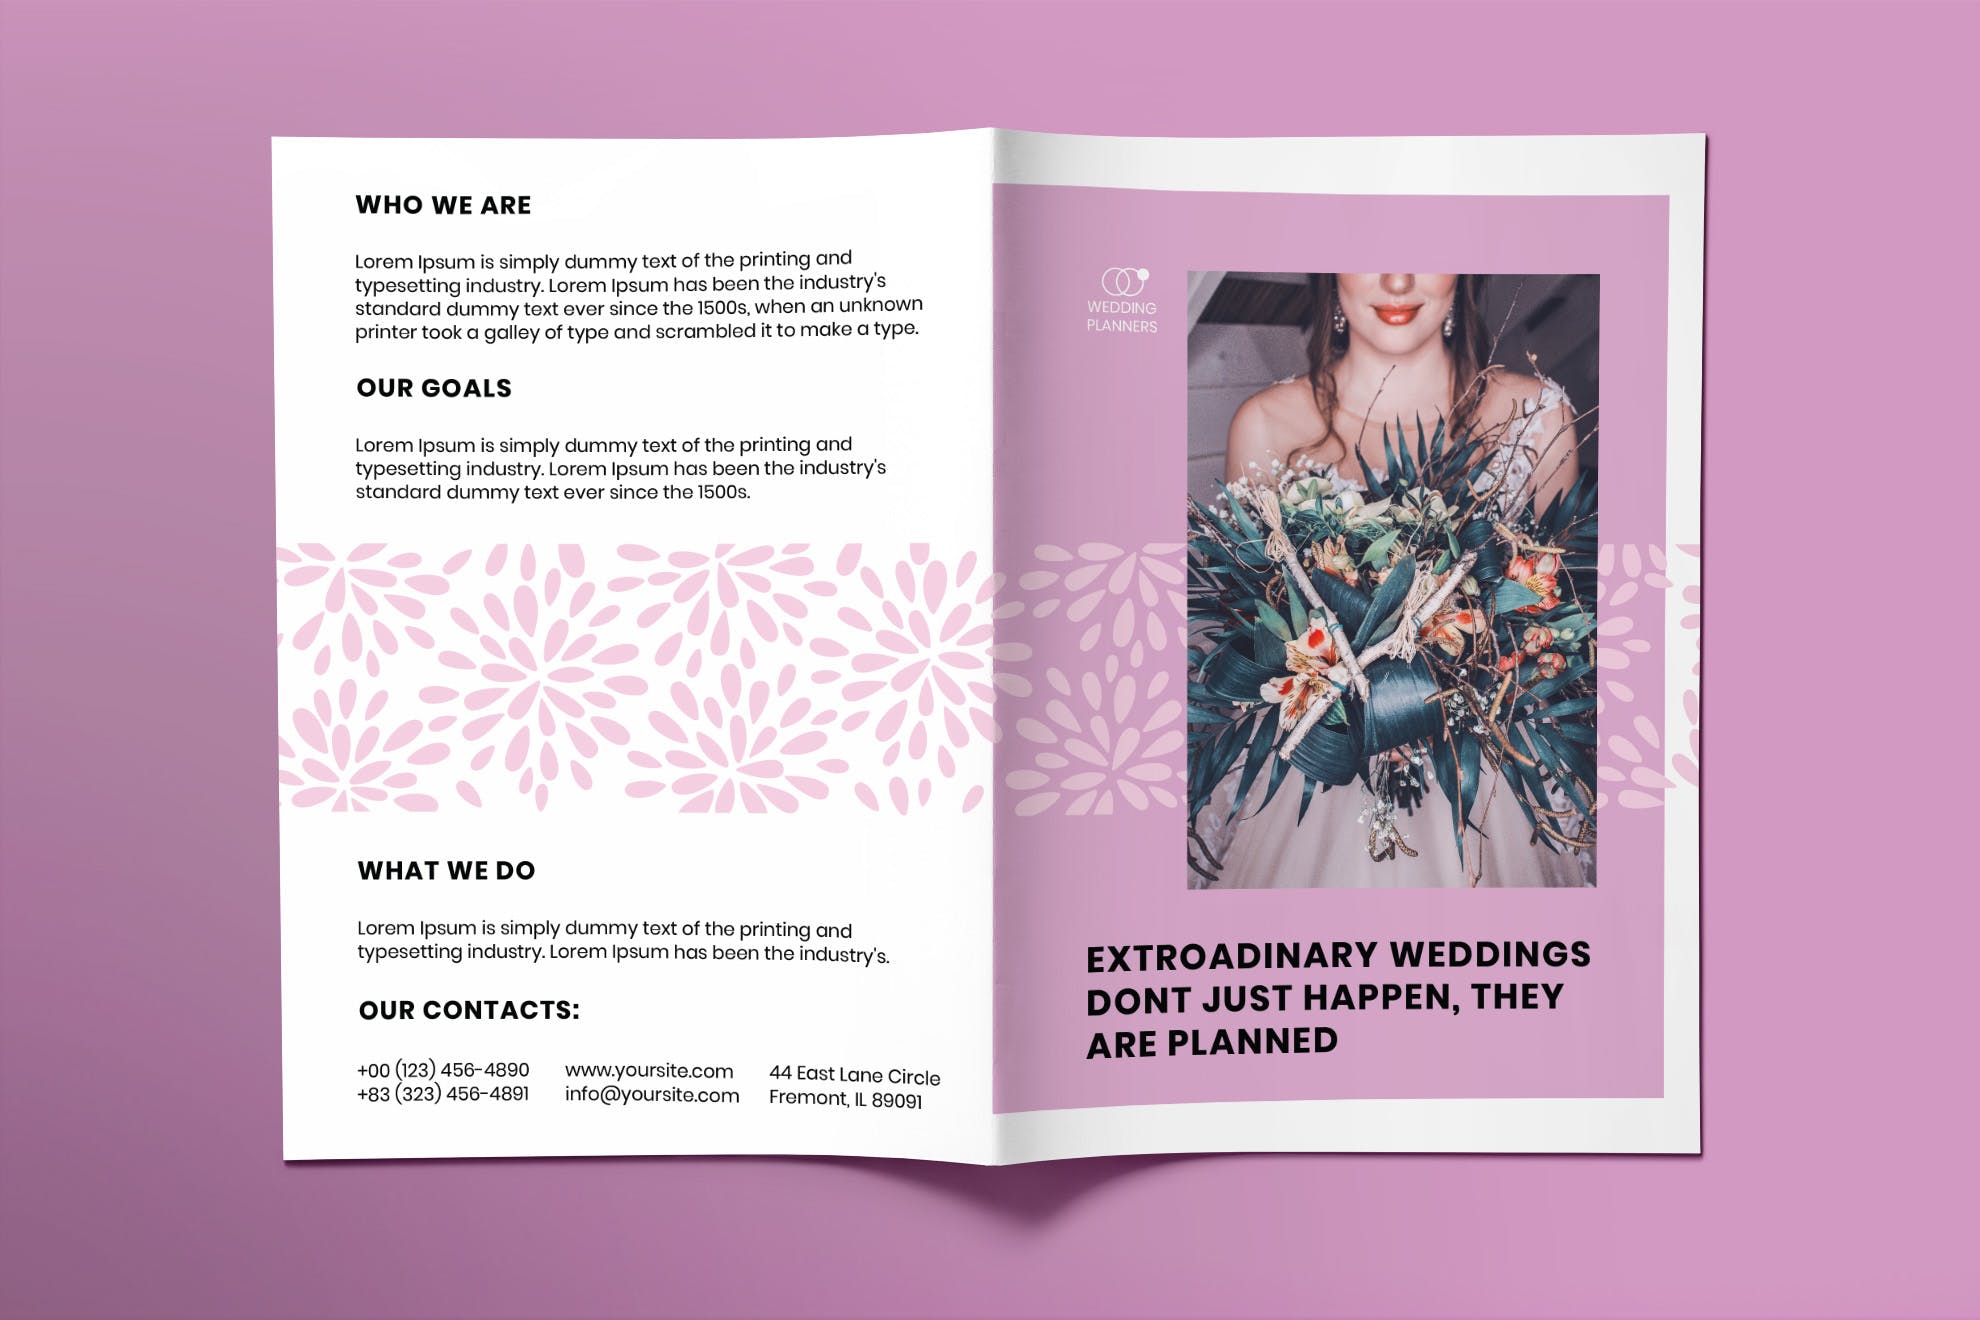 婚礼策划婚庆公司宣传册设计模板 Wedding Planner Brochure Bifold插图(1)